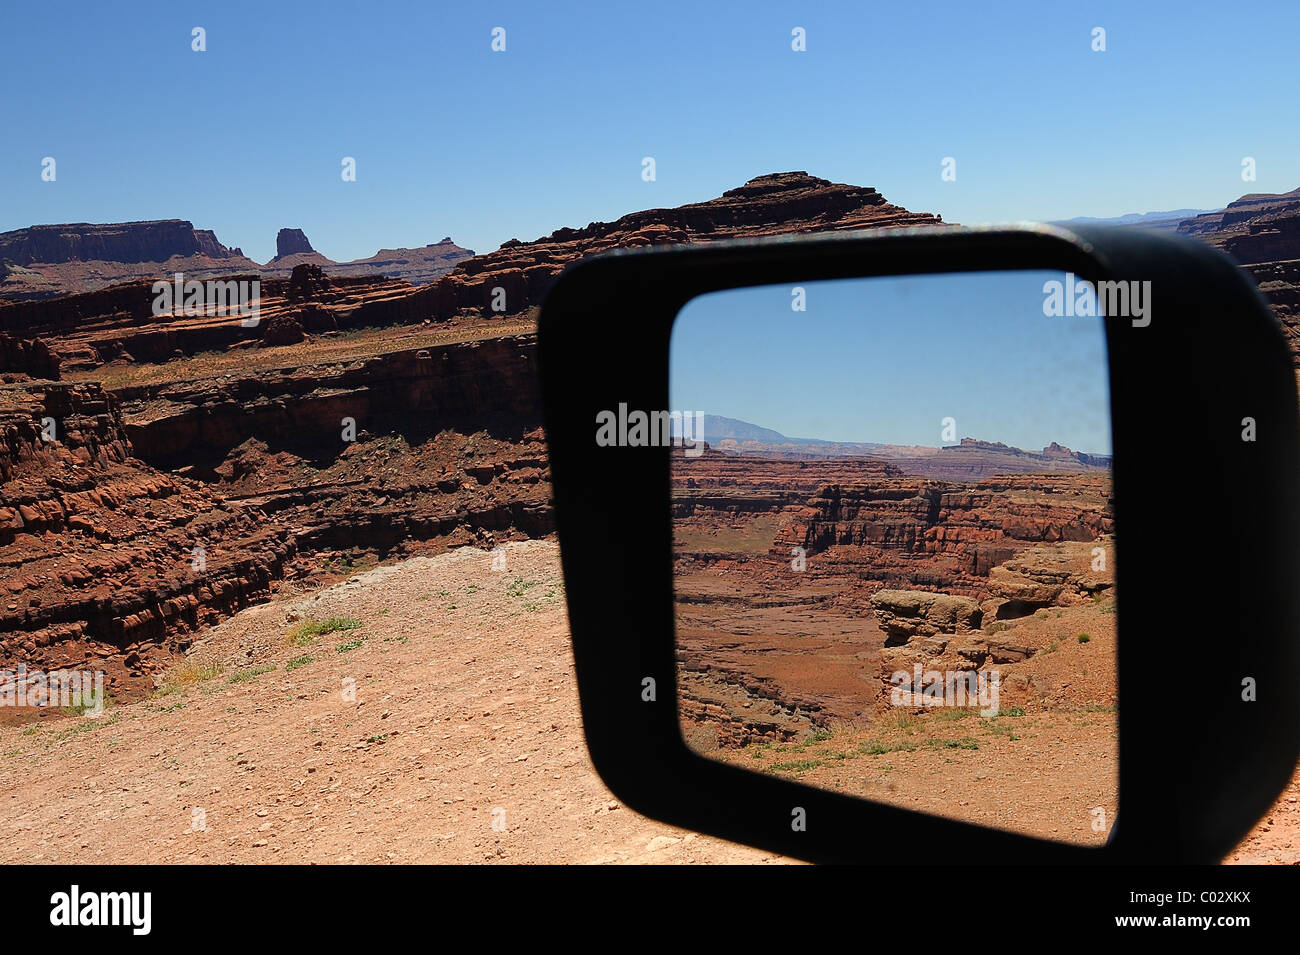 À Canyonlands National Park à partir d'un miroir de voiture, l'île dans le ciel, près de Moab, États-Unis Banque D'Images